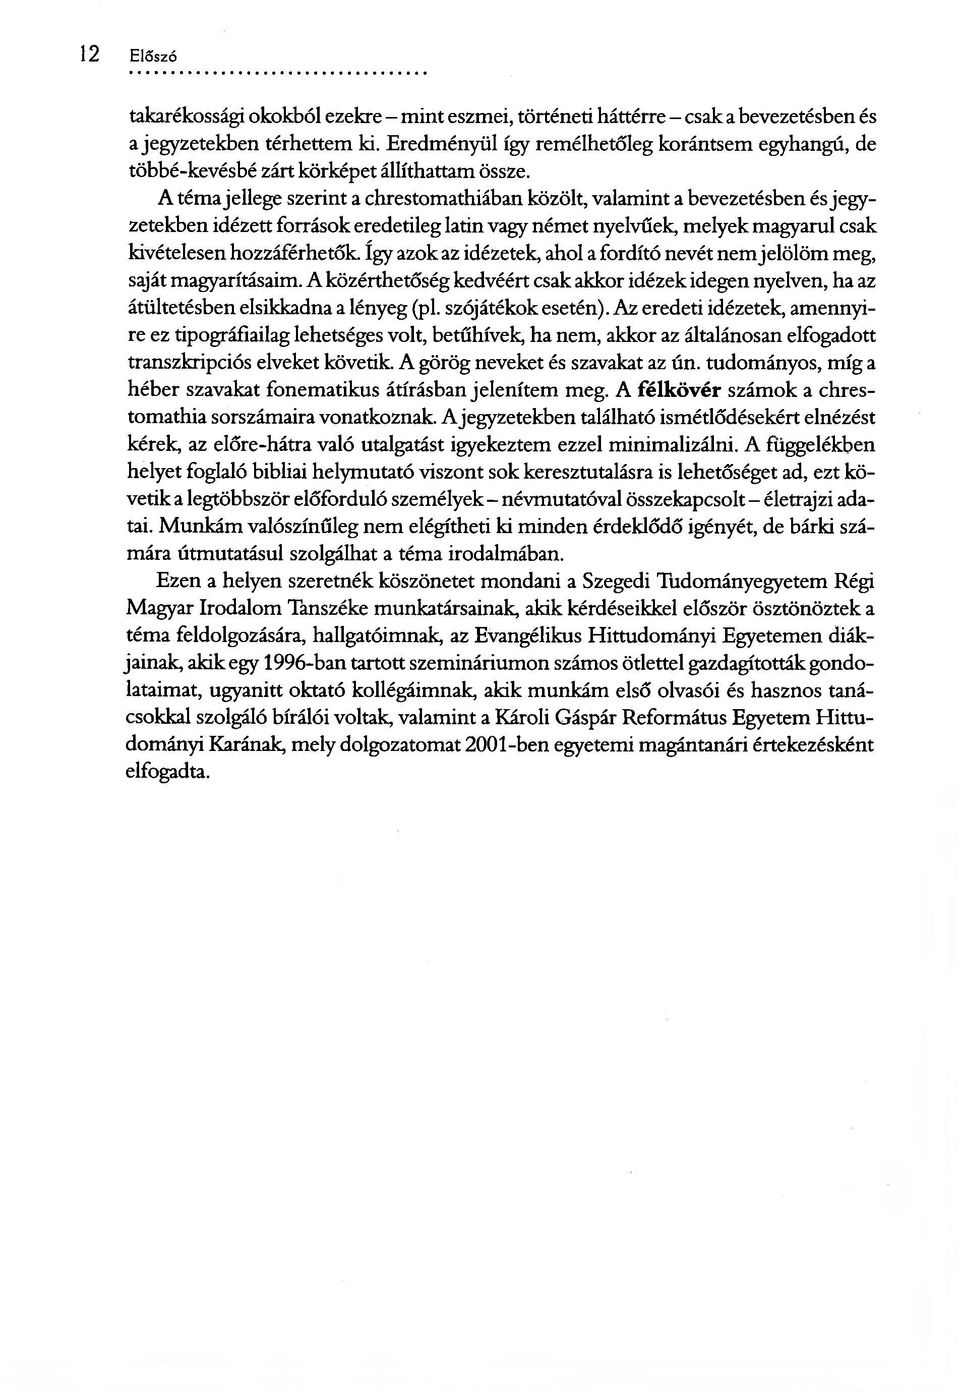 A téma jellege szerint a chrestomathiában közölt, valamint a bevezetésben és jegyzetekben idézett források eredetileg latin vagy német nyelvűek, melyek magyarul csak kivételesen hozzáférhetők.